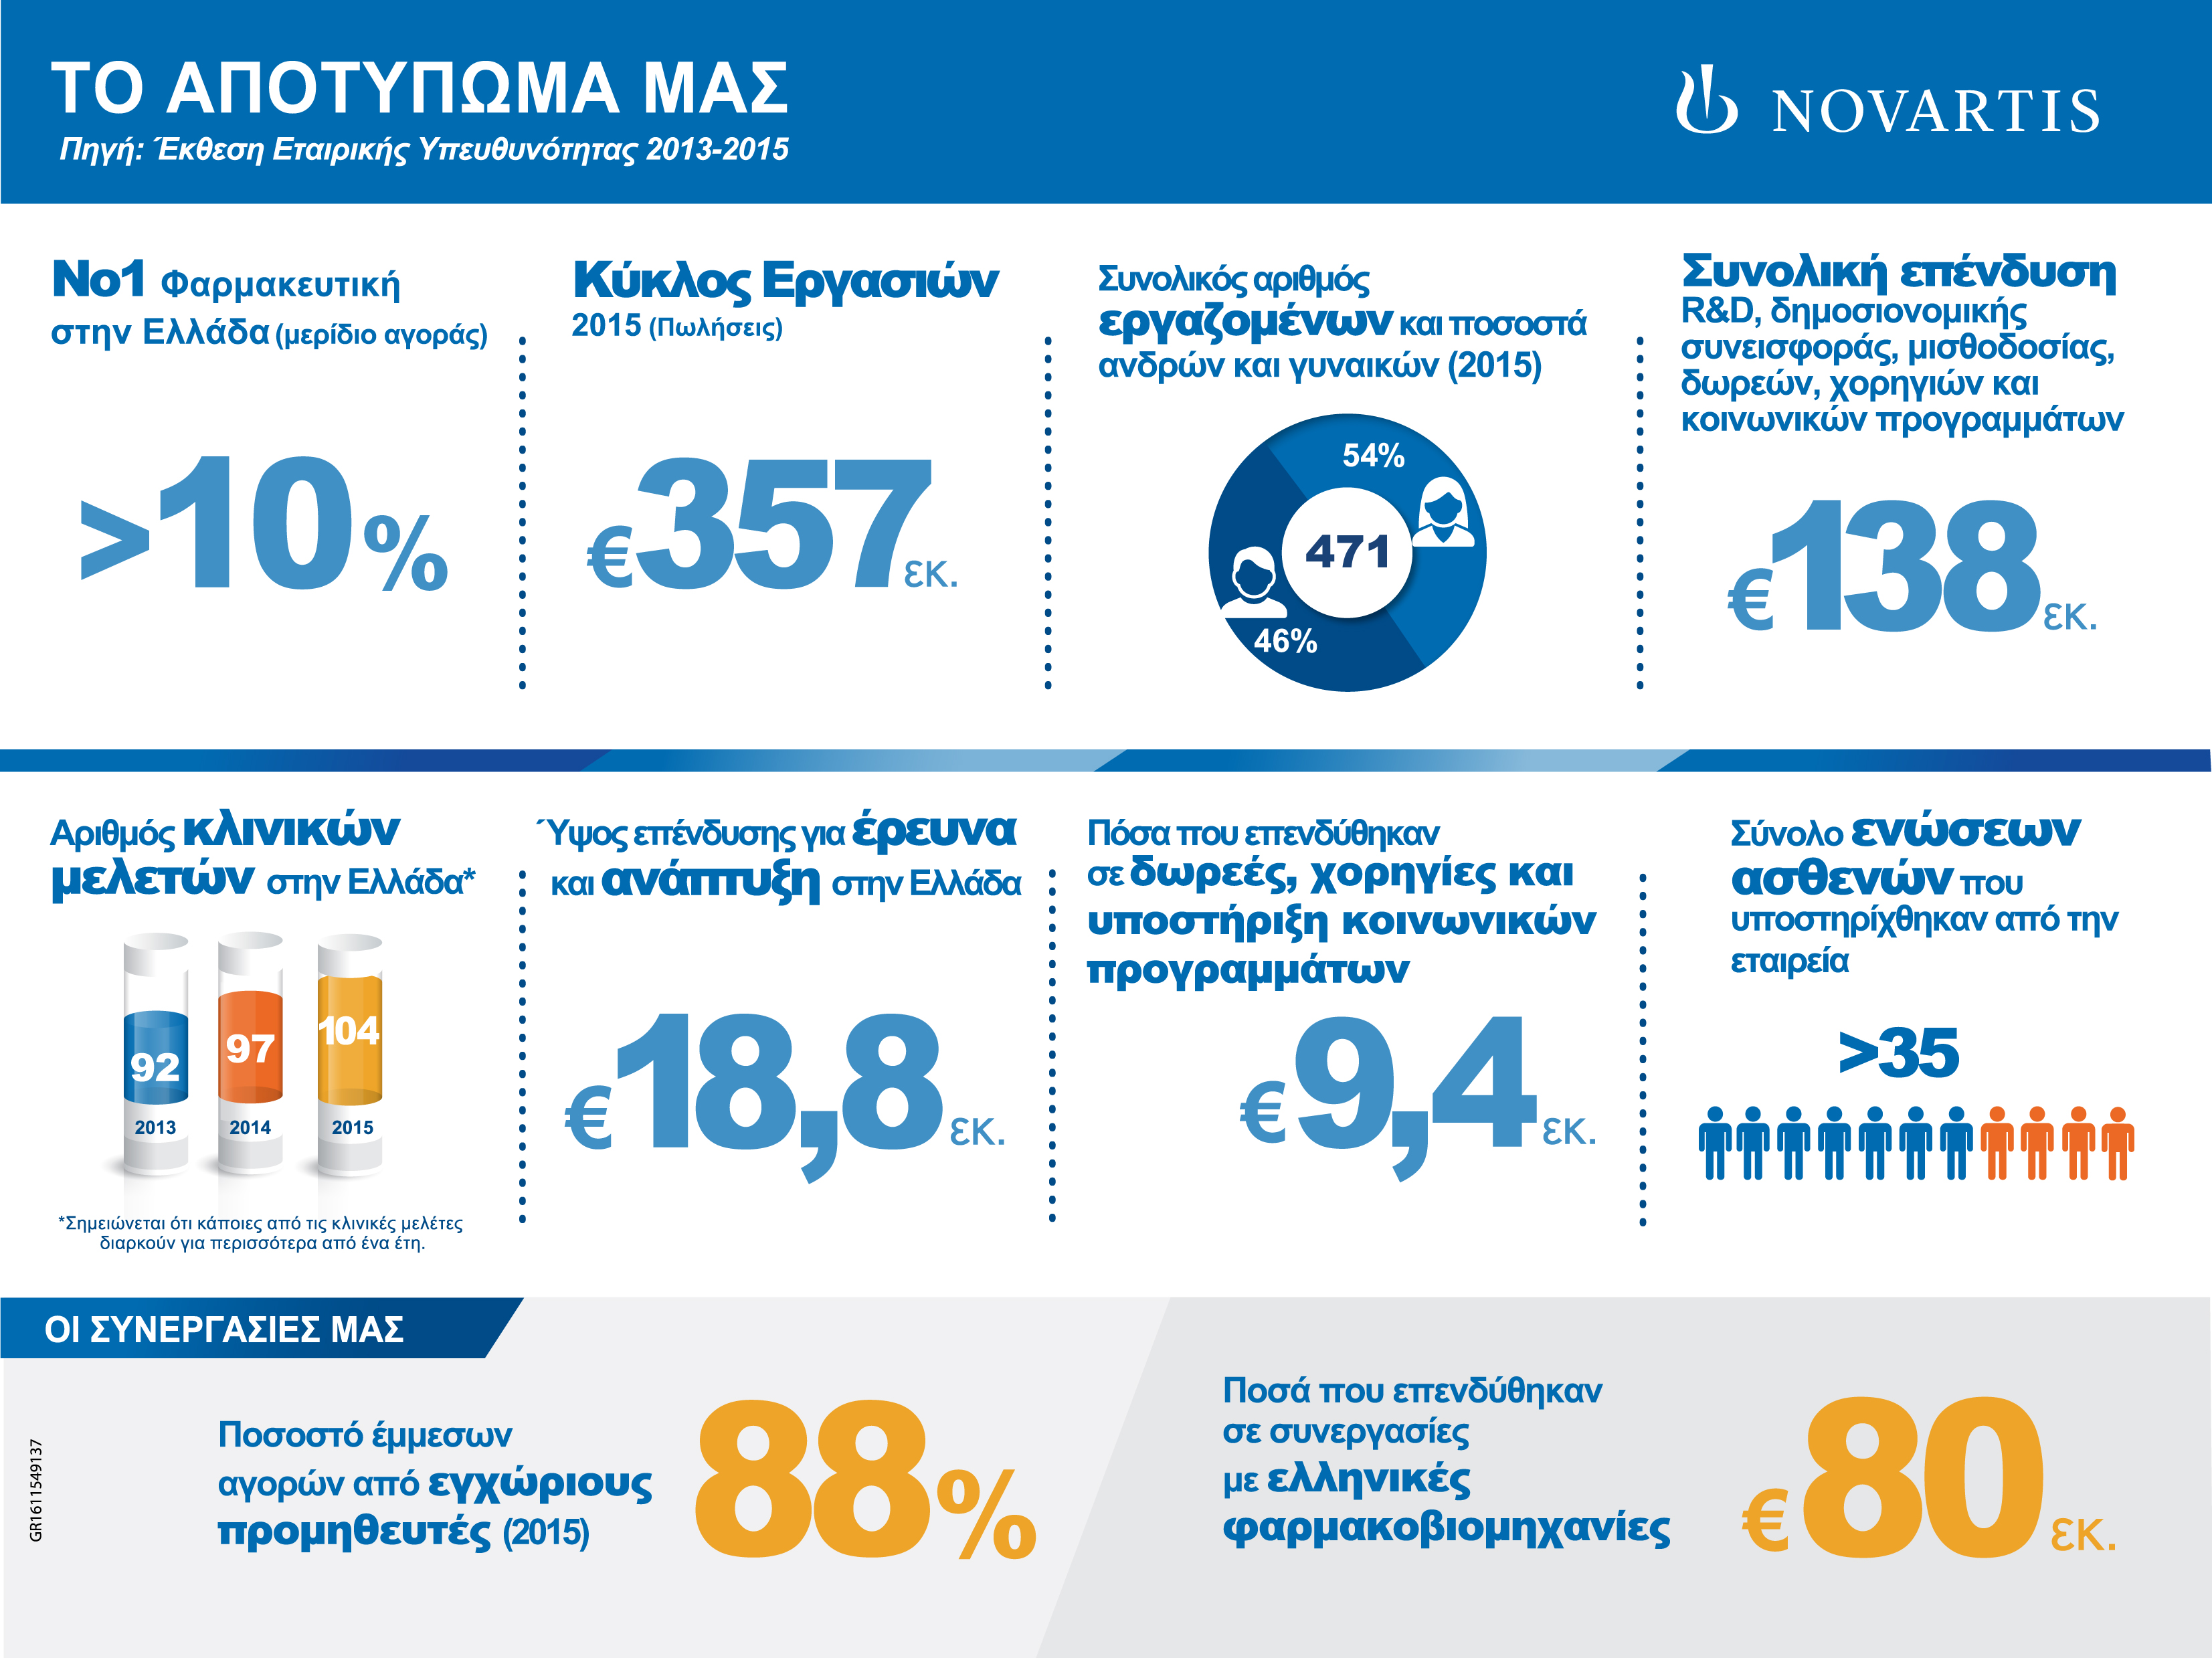 Η Novartis Hellas παρουσίασε την Έκθεση Εταιρικής Υπευθυνότητας (ΕΕΥ) 2013-2015